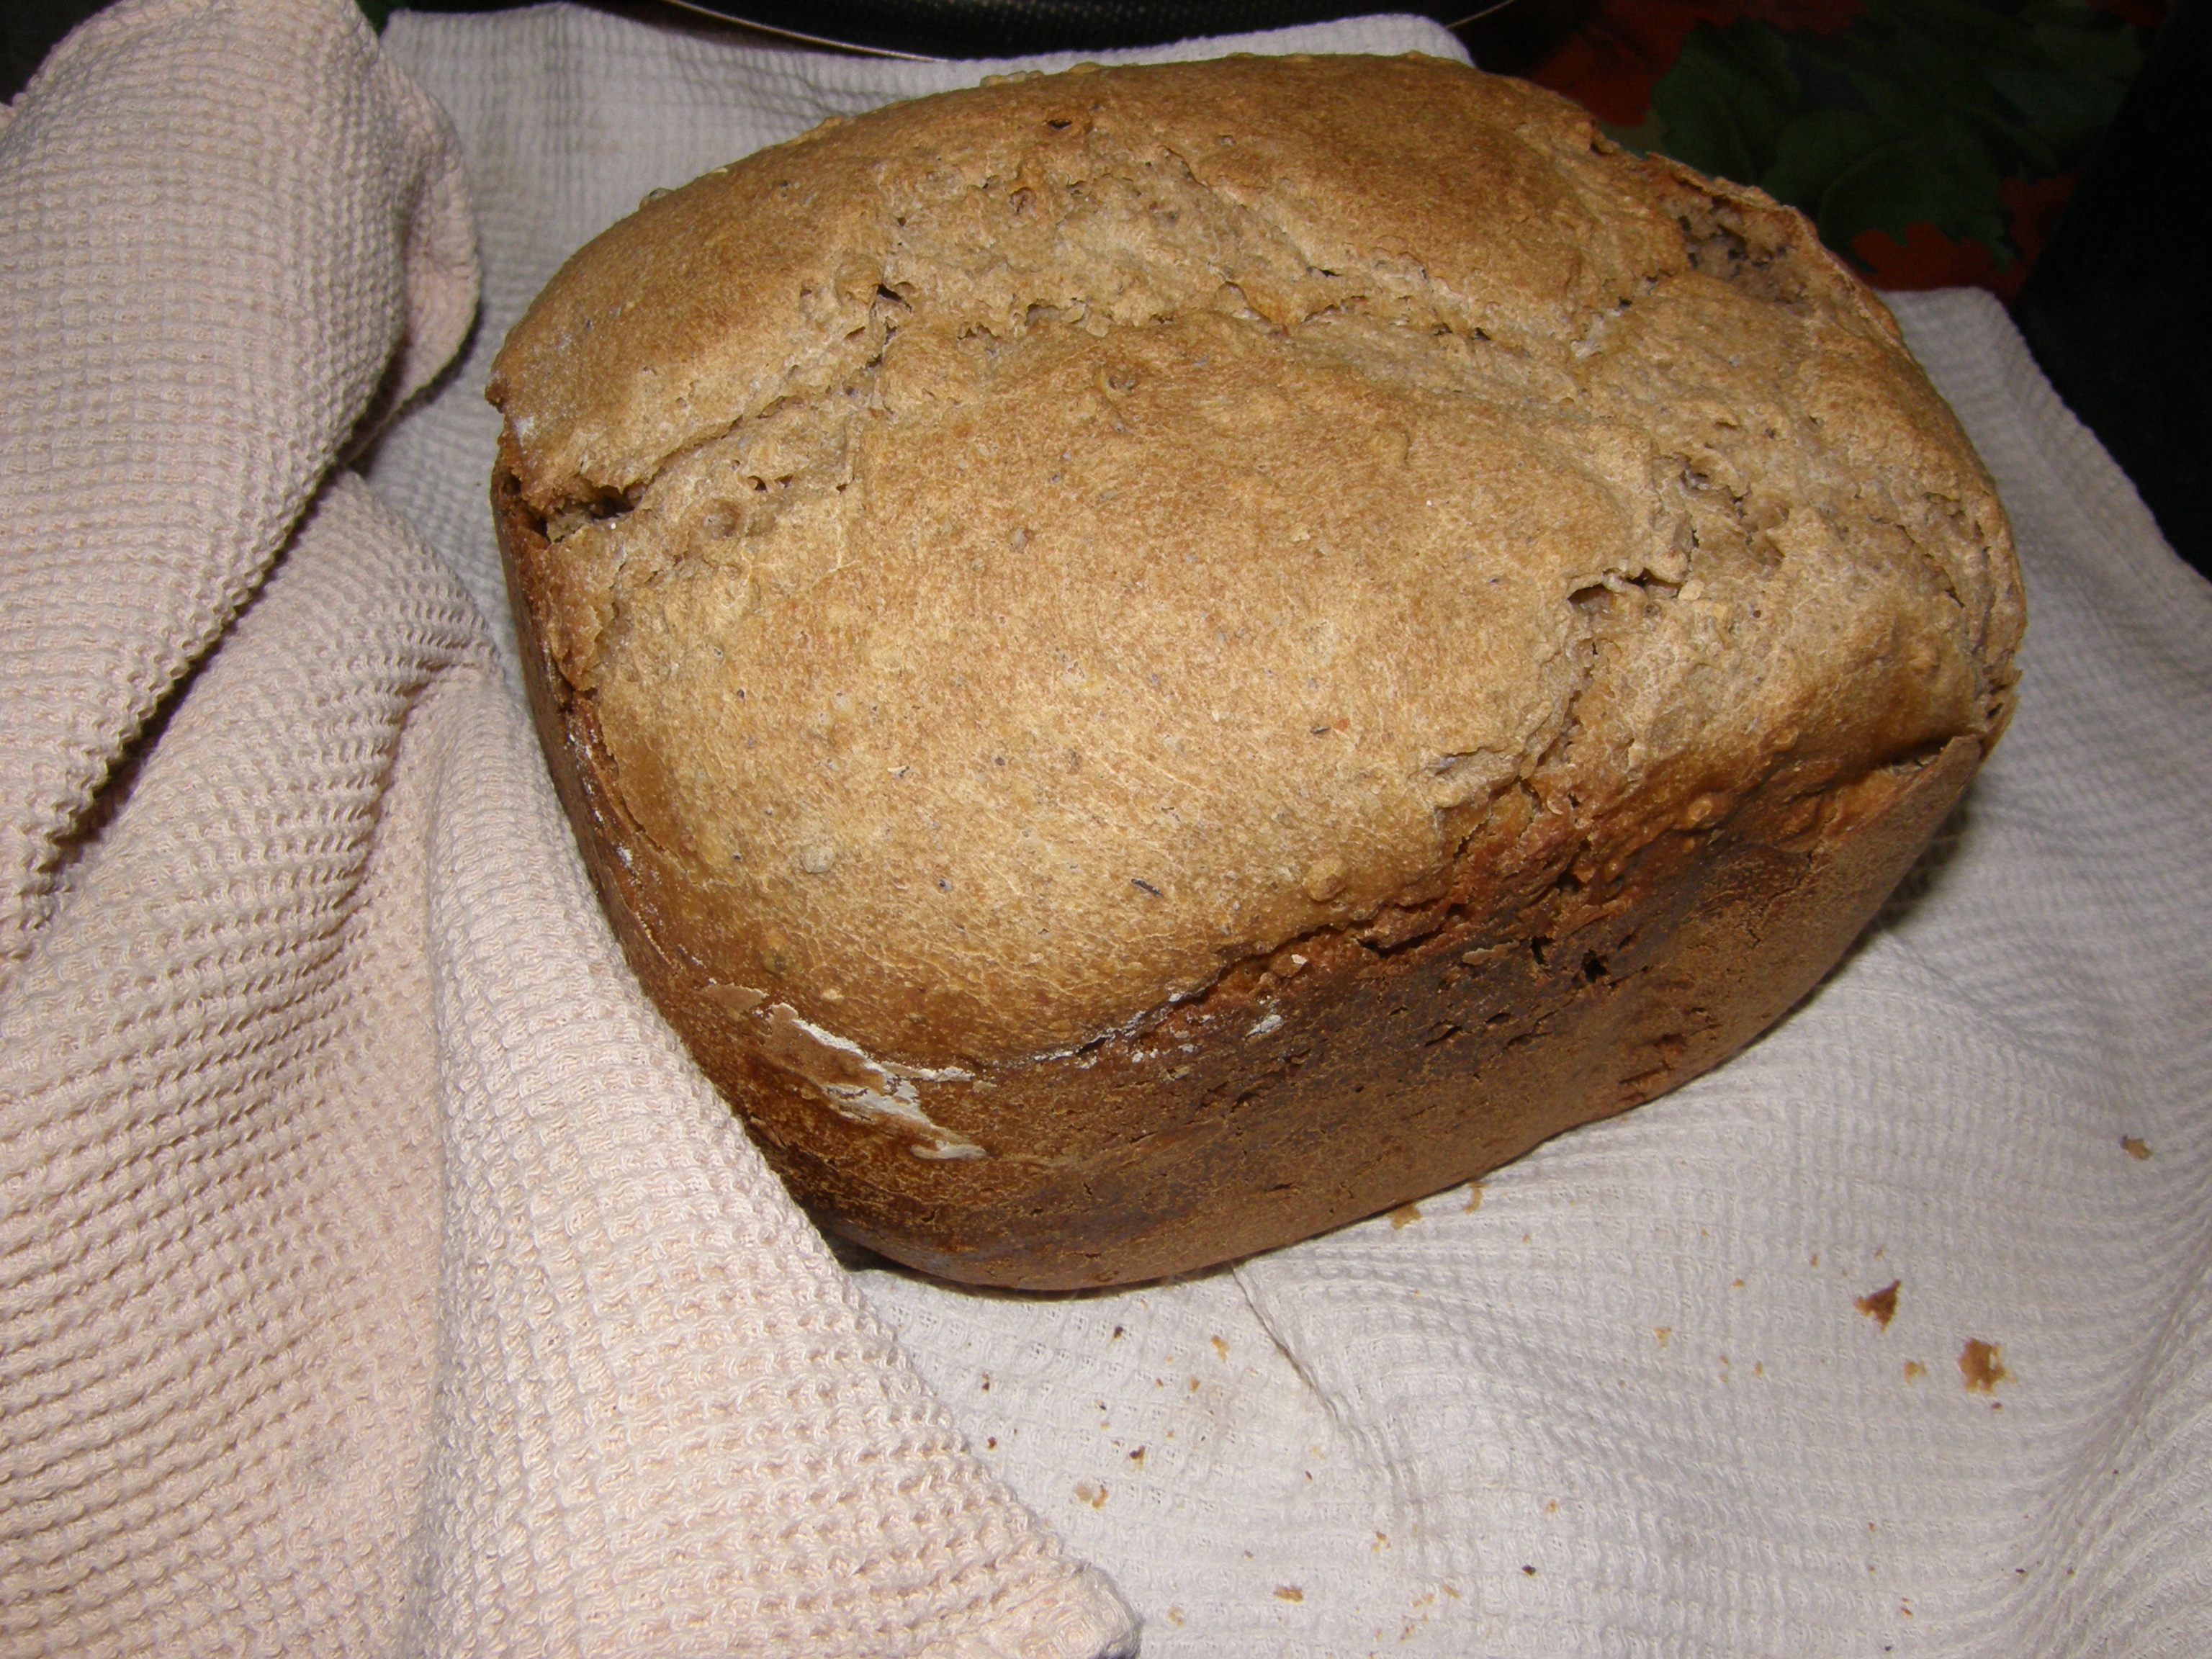 Pan de centeno y trigo con lentejas y cilantro.